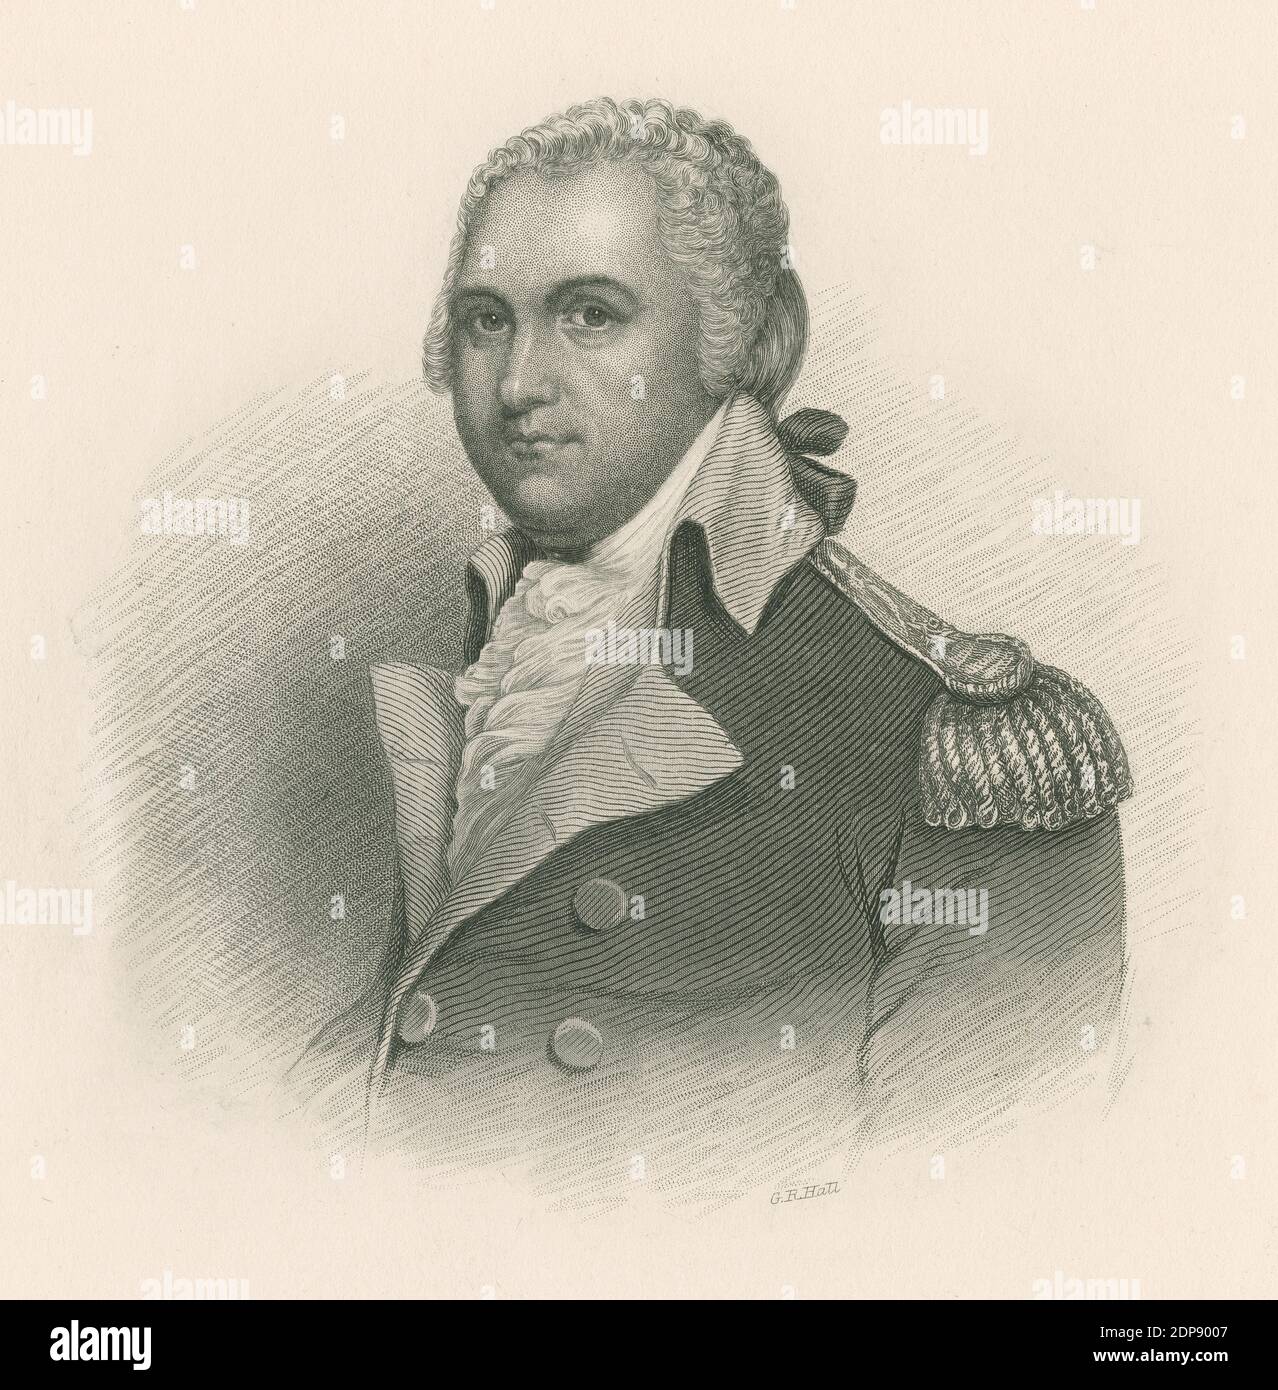 Gravure antique de c1860, Henry Lee III Le major-général Henry Lee III (1756-1818) était un ancien Patriot et homme politique américain. SOURCE : GRAVURE ORIGINALE Banque D'Images